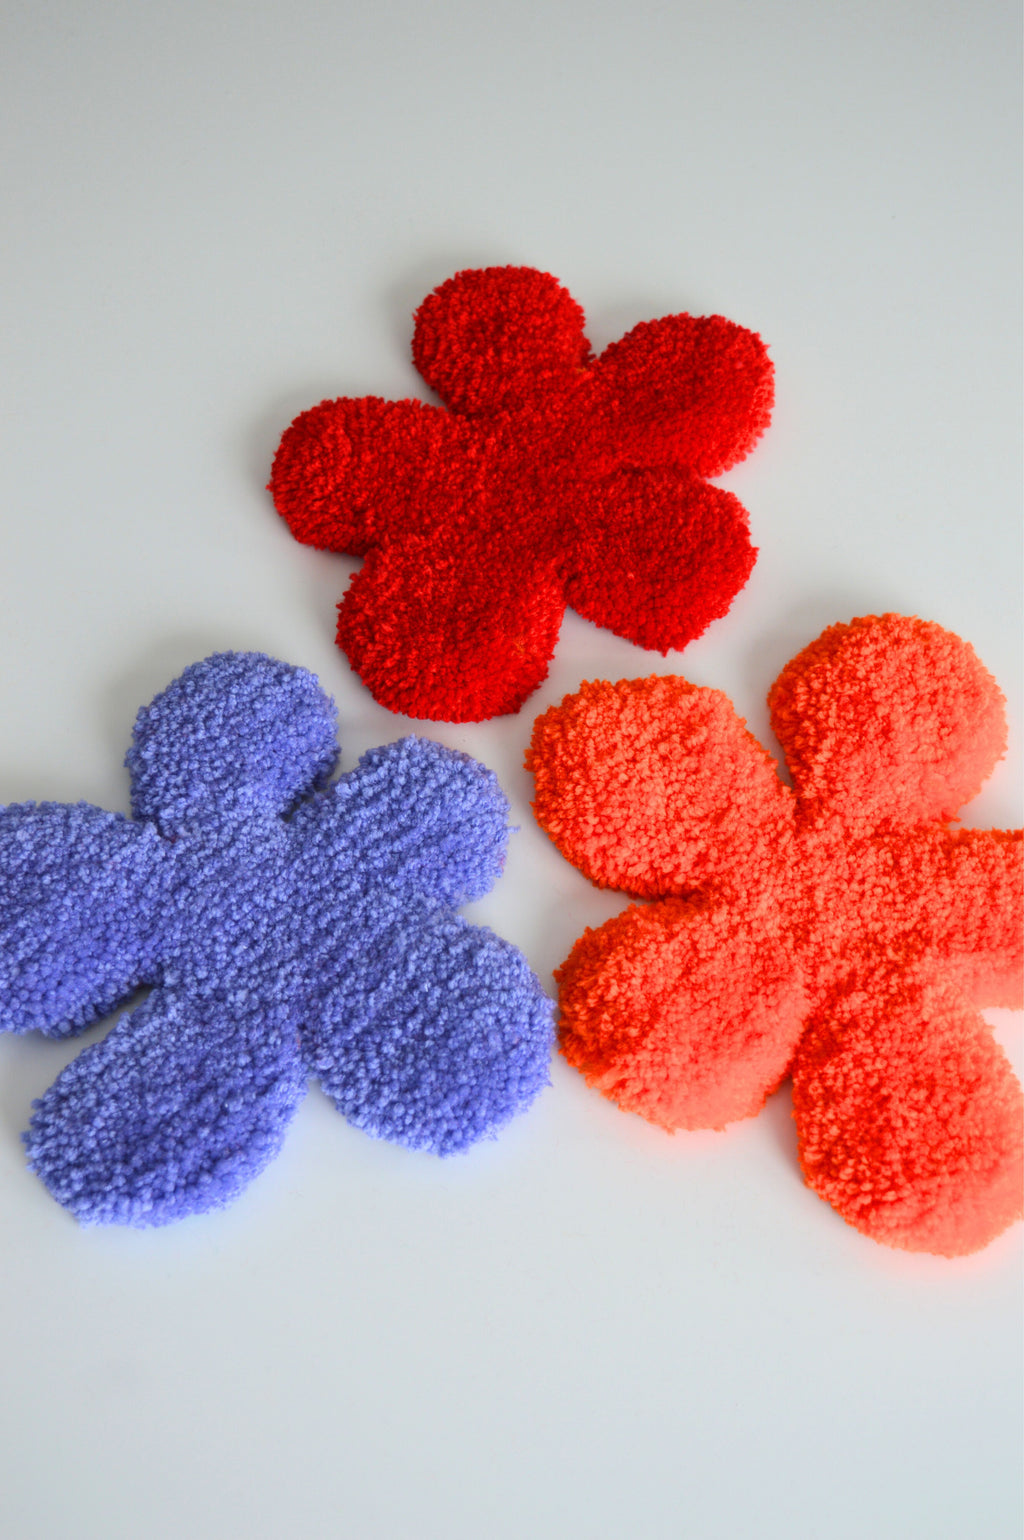 Rashelle Flubber Coasters (Orange, Red, Periwinkle)